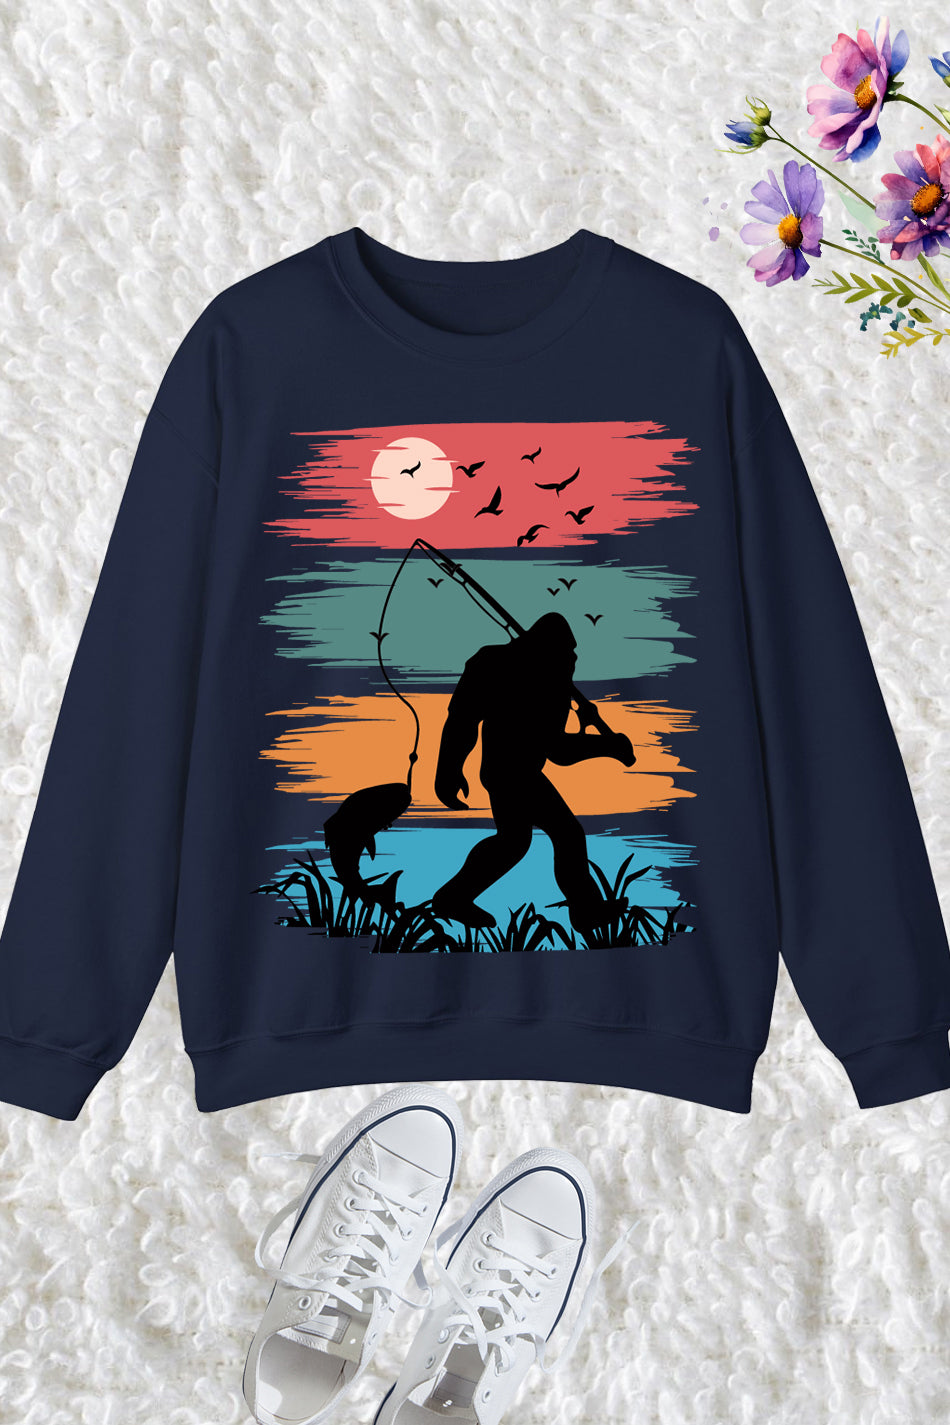 Fishing Sweatshirt Fishing with Bigfoot